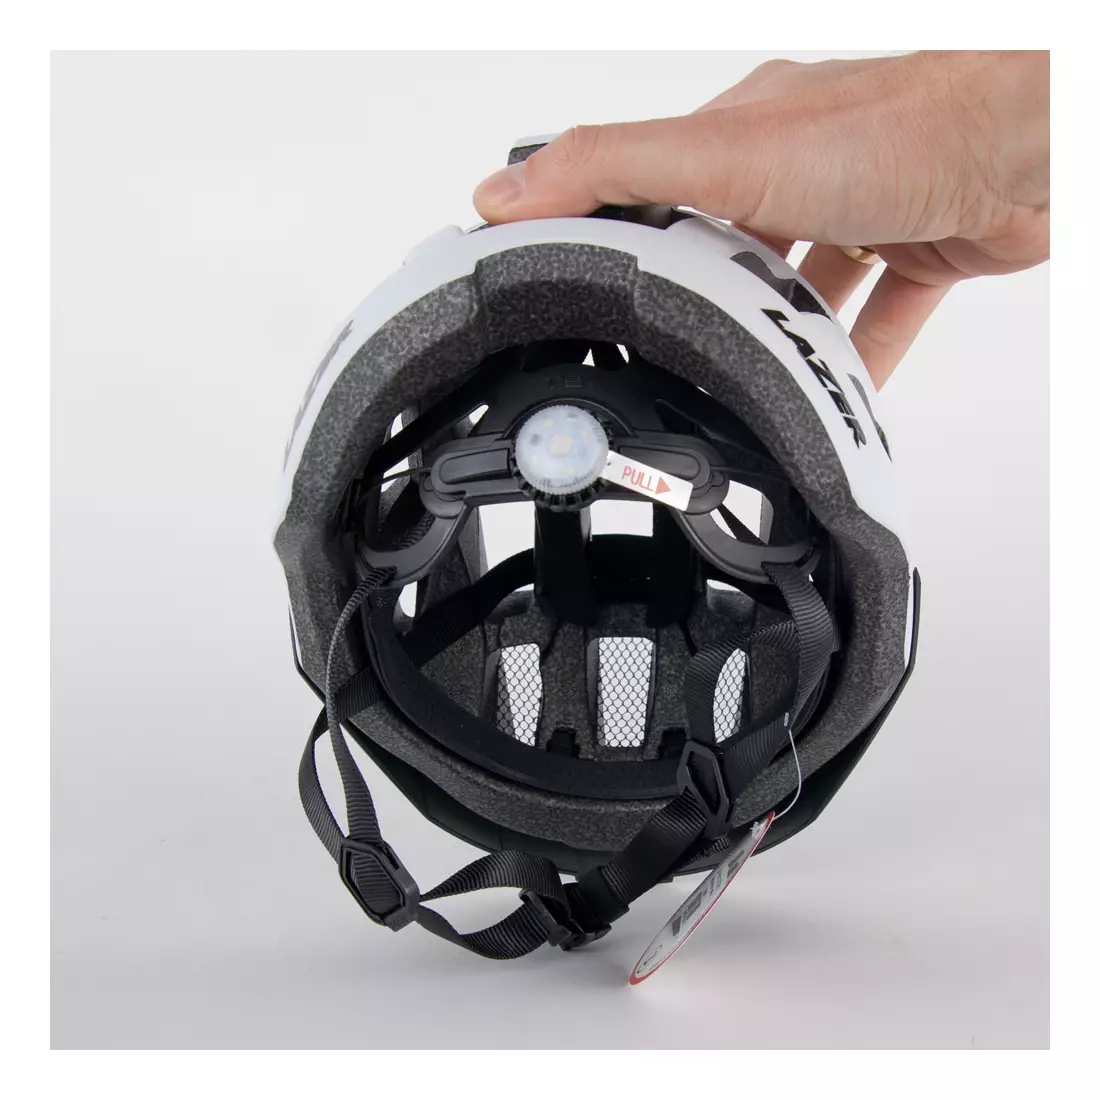 LAZER dámská cyklistická helma Petit DLX Mřížka + Led bílá matná